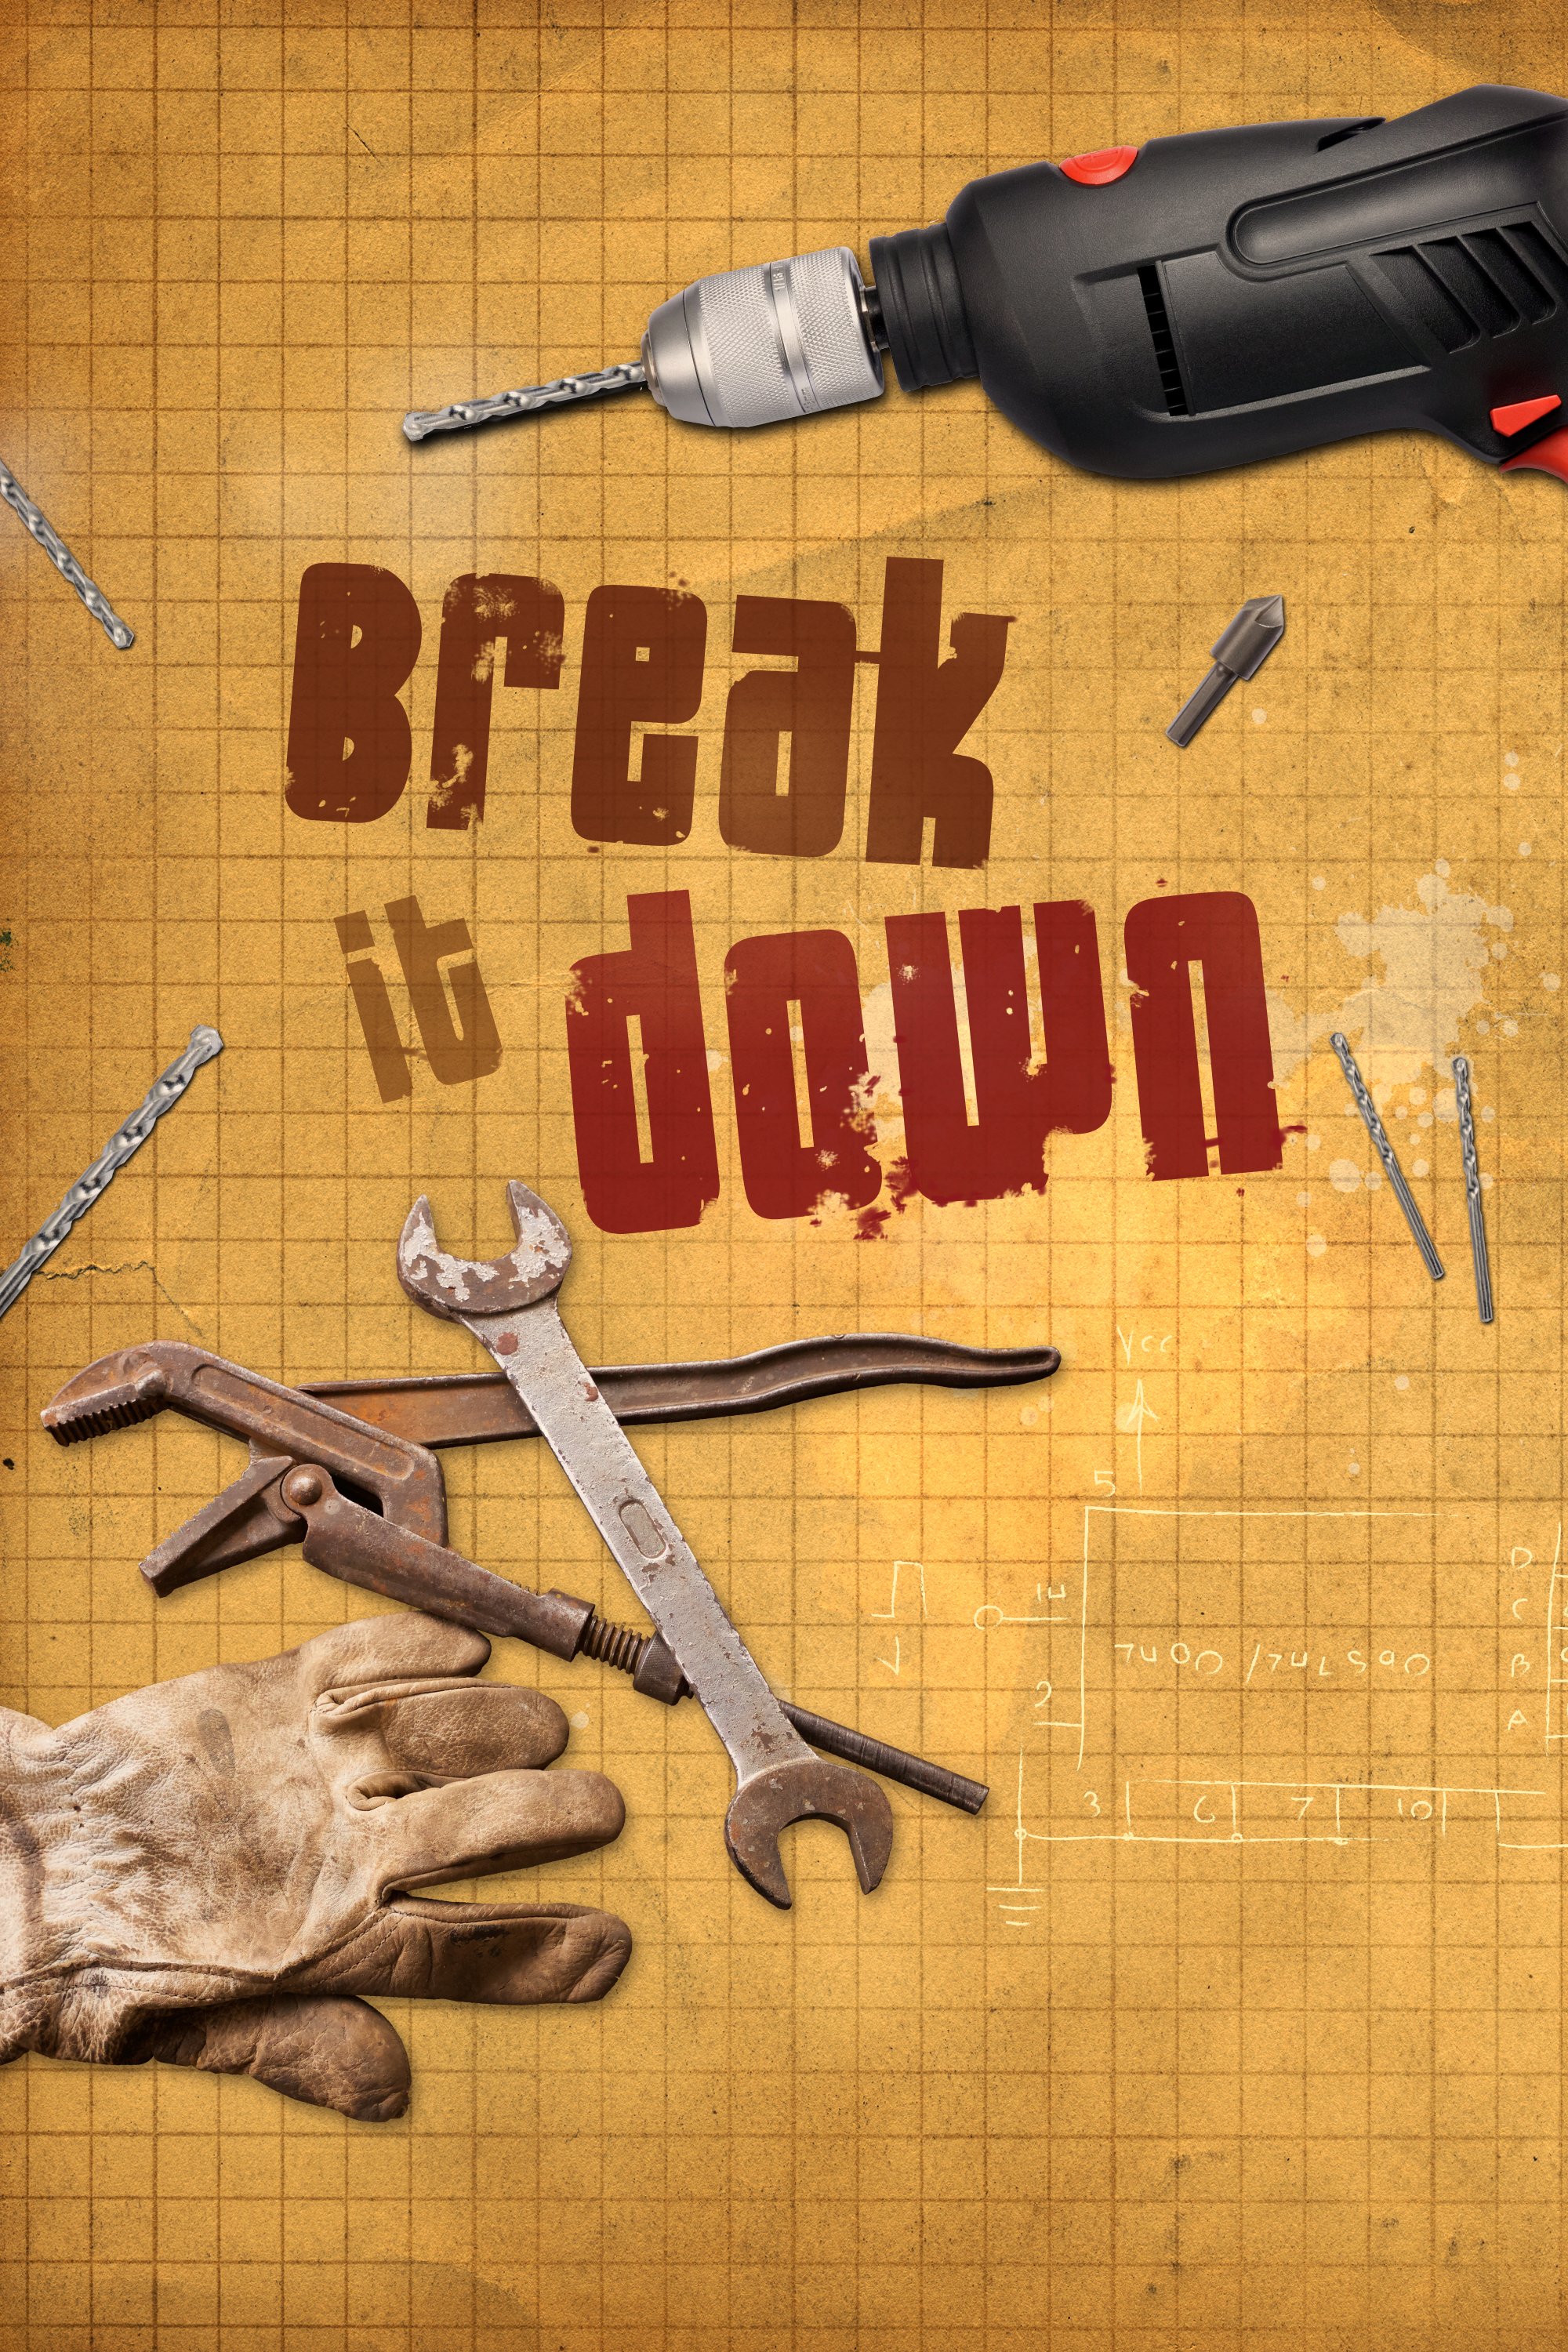 Break It Down